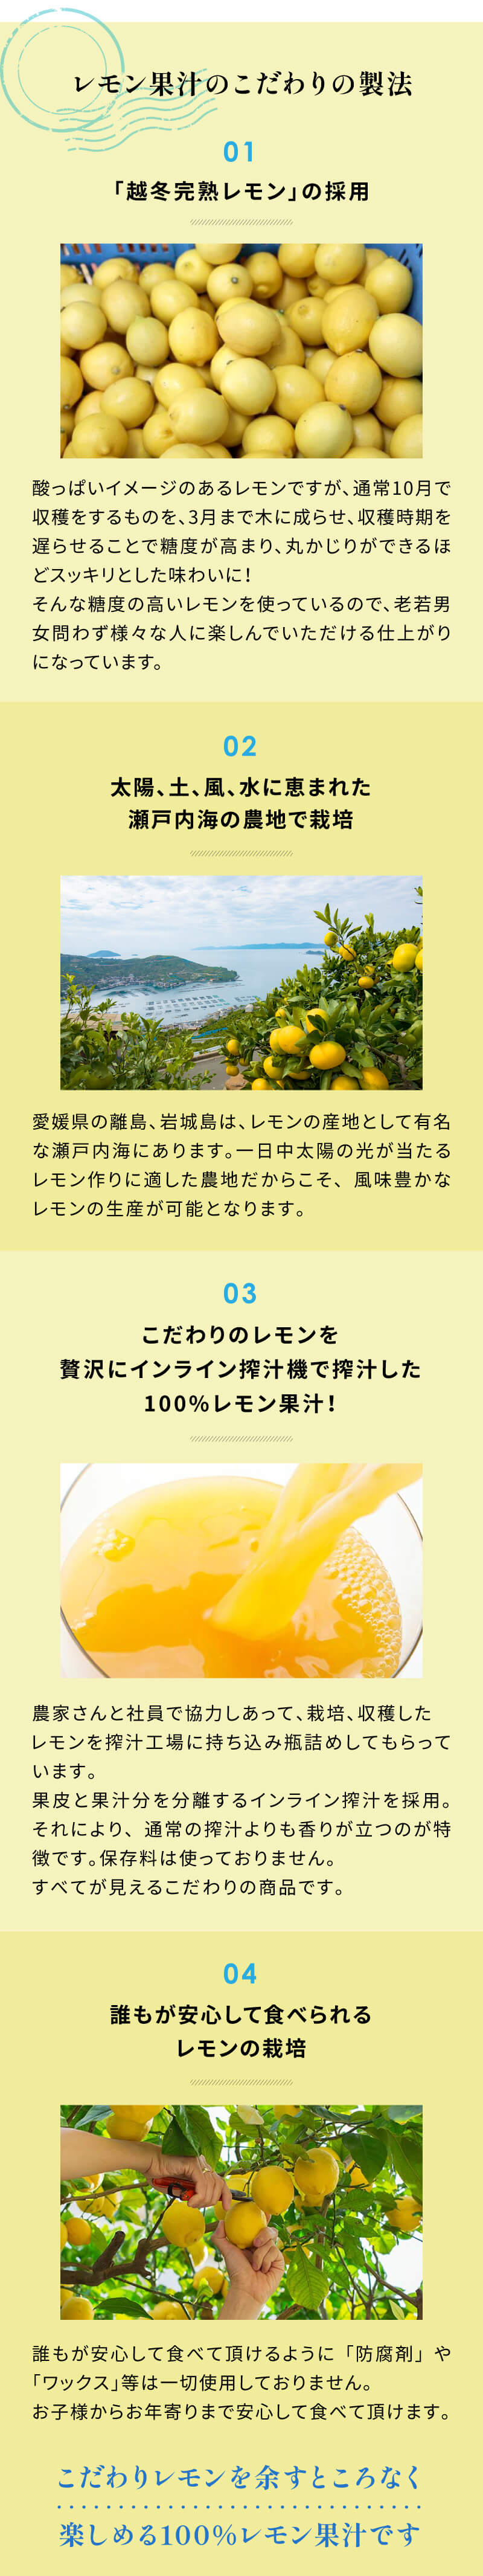 レモン果汁のこだわり製法